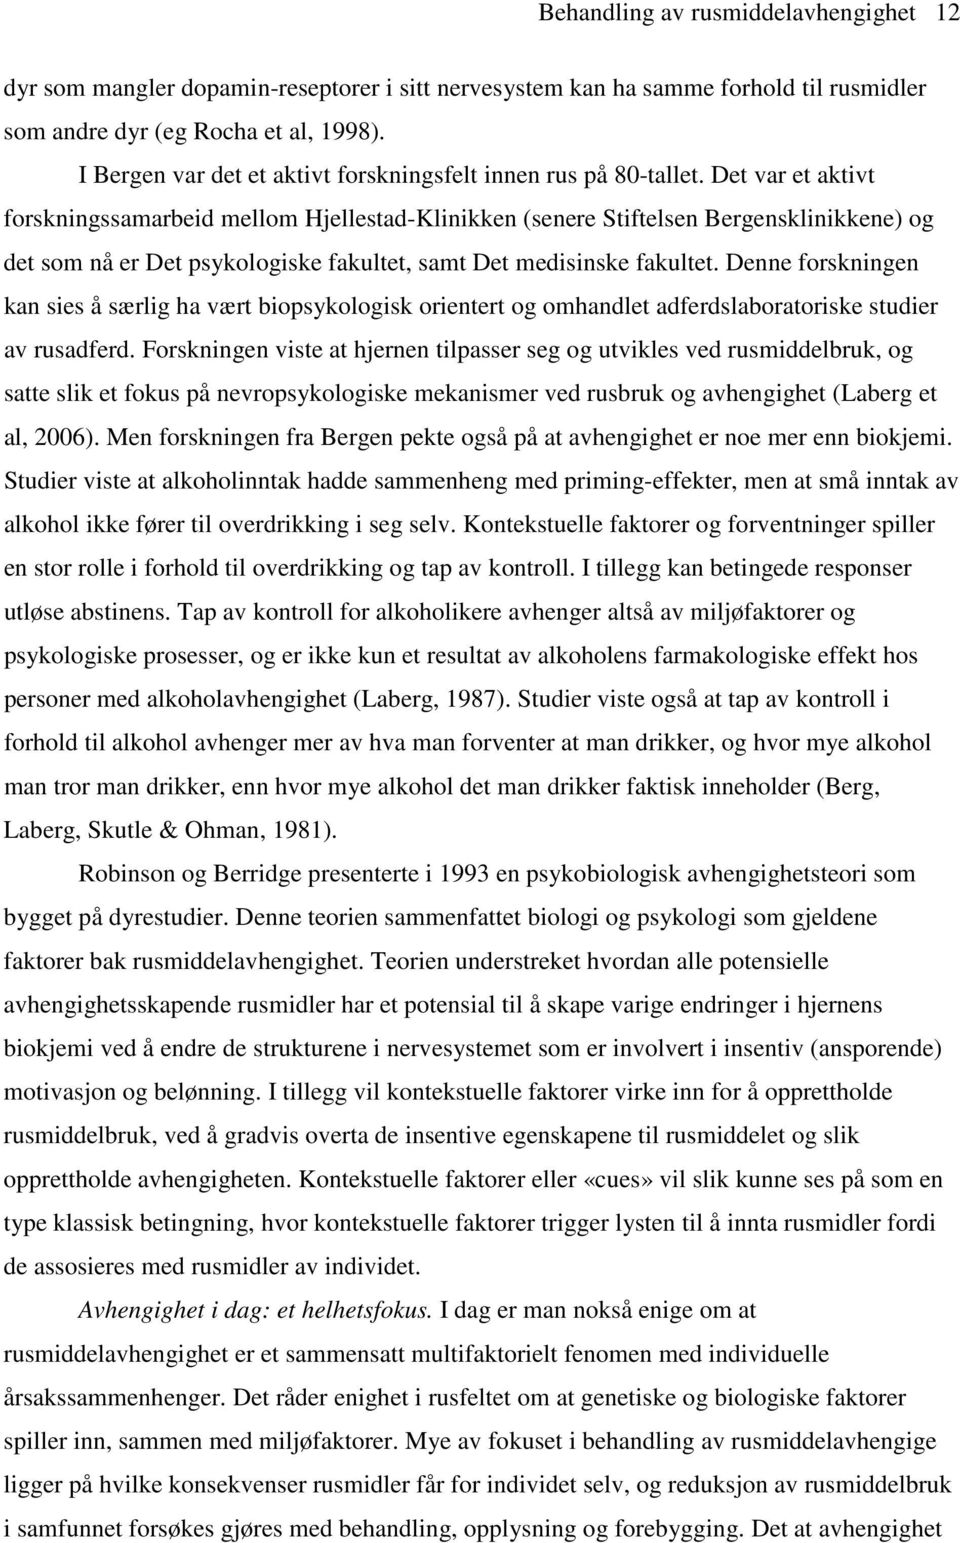 Det var et aktivt forskningssamarbeid mellom Hjellestad-Klinikken (senere Stiftelsen Bergensklinikkene) og det som nå er Det psykologiske fakultet, samt Det medisinske fakultet.